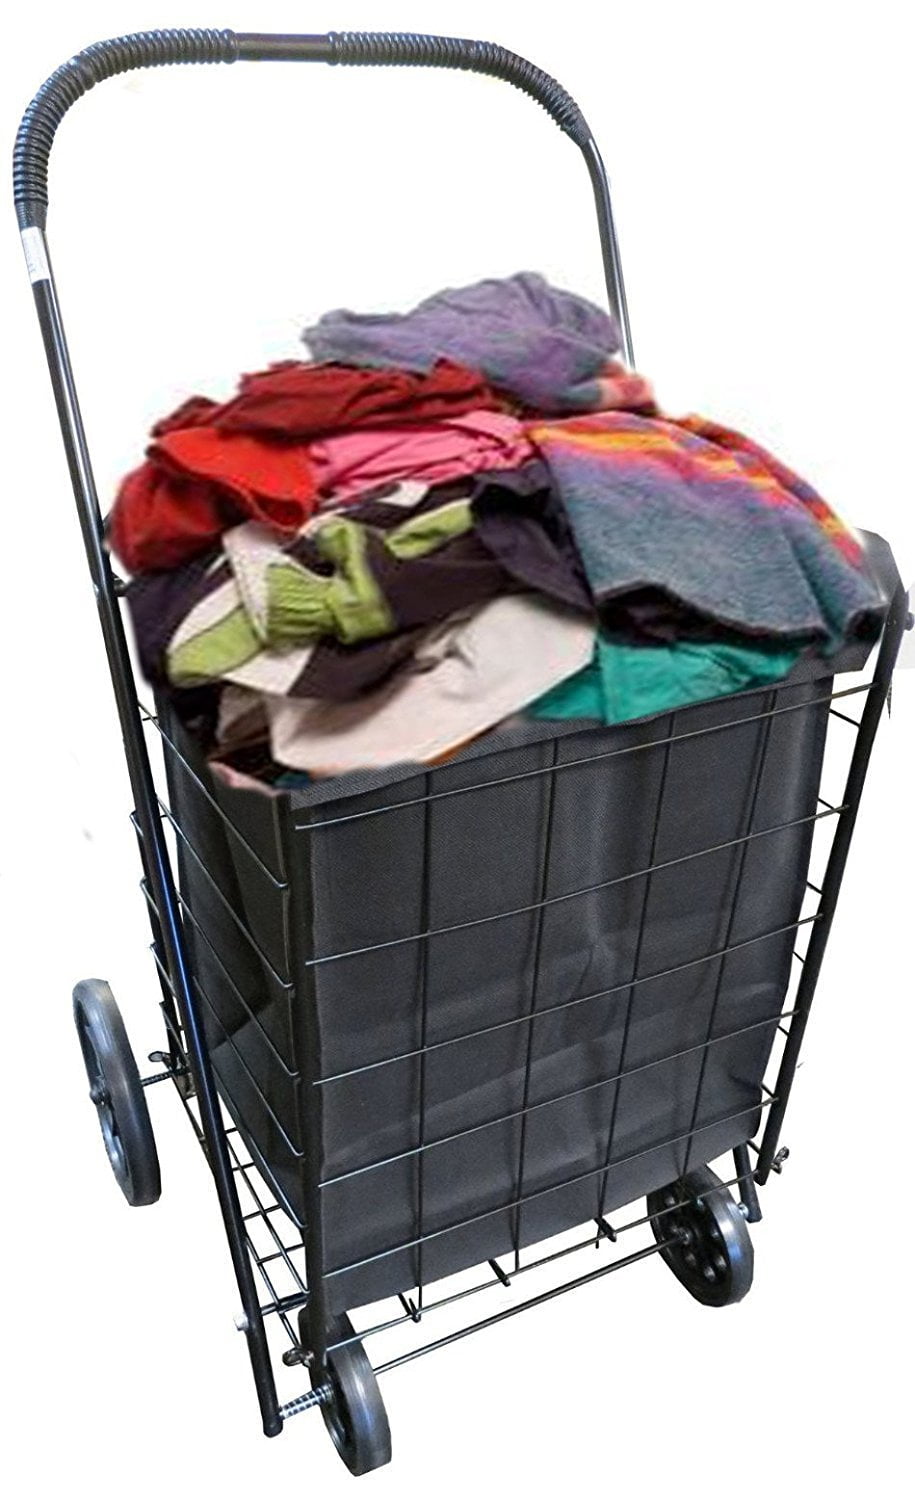 longeberger laundry basket on wheels